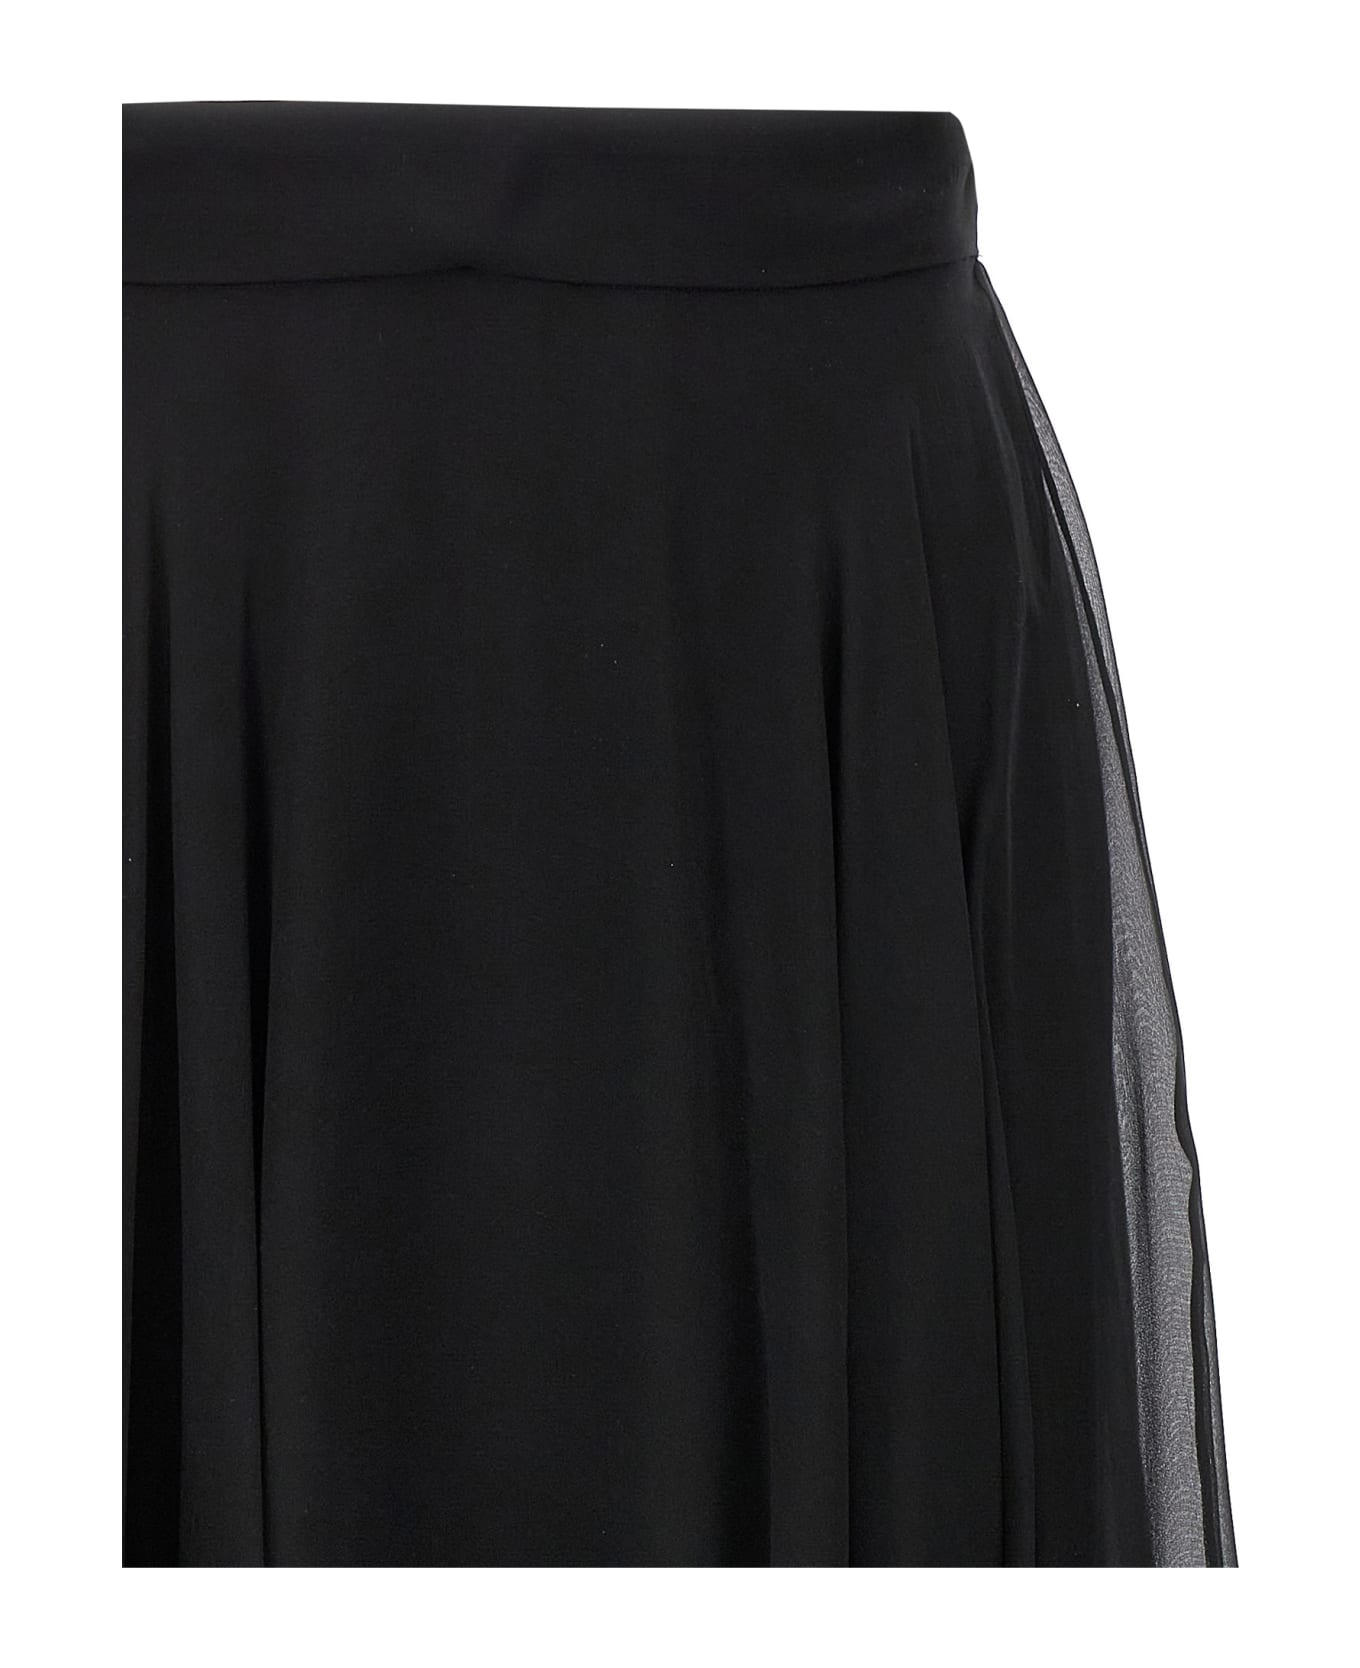 Dolce & Gabbana Chiffon Skirt - Black  